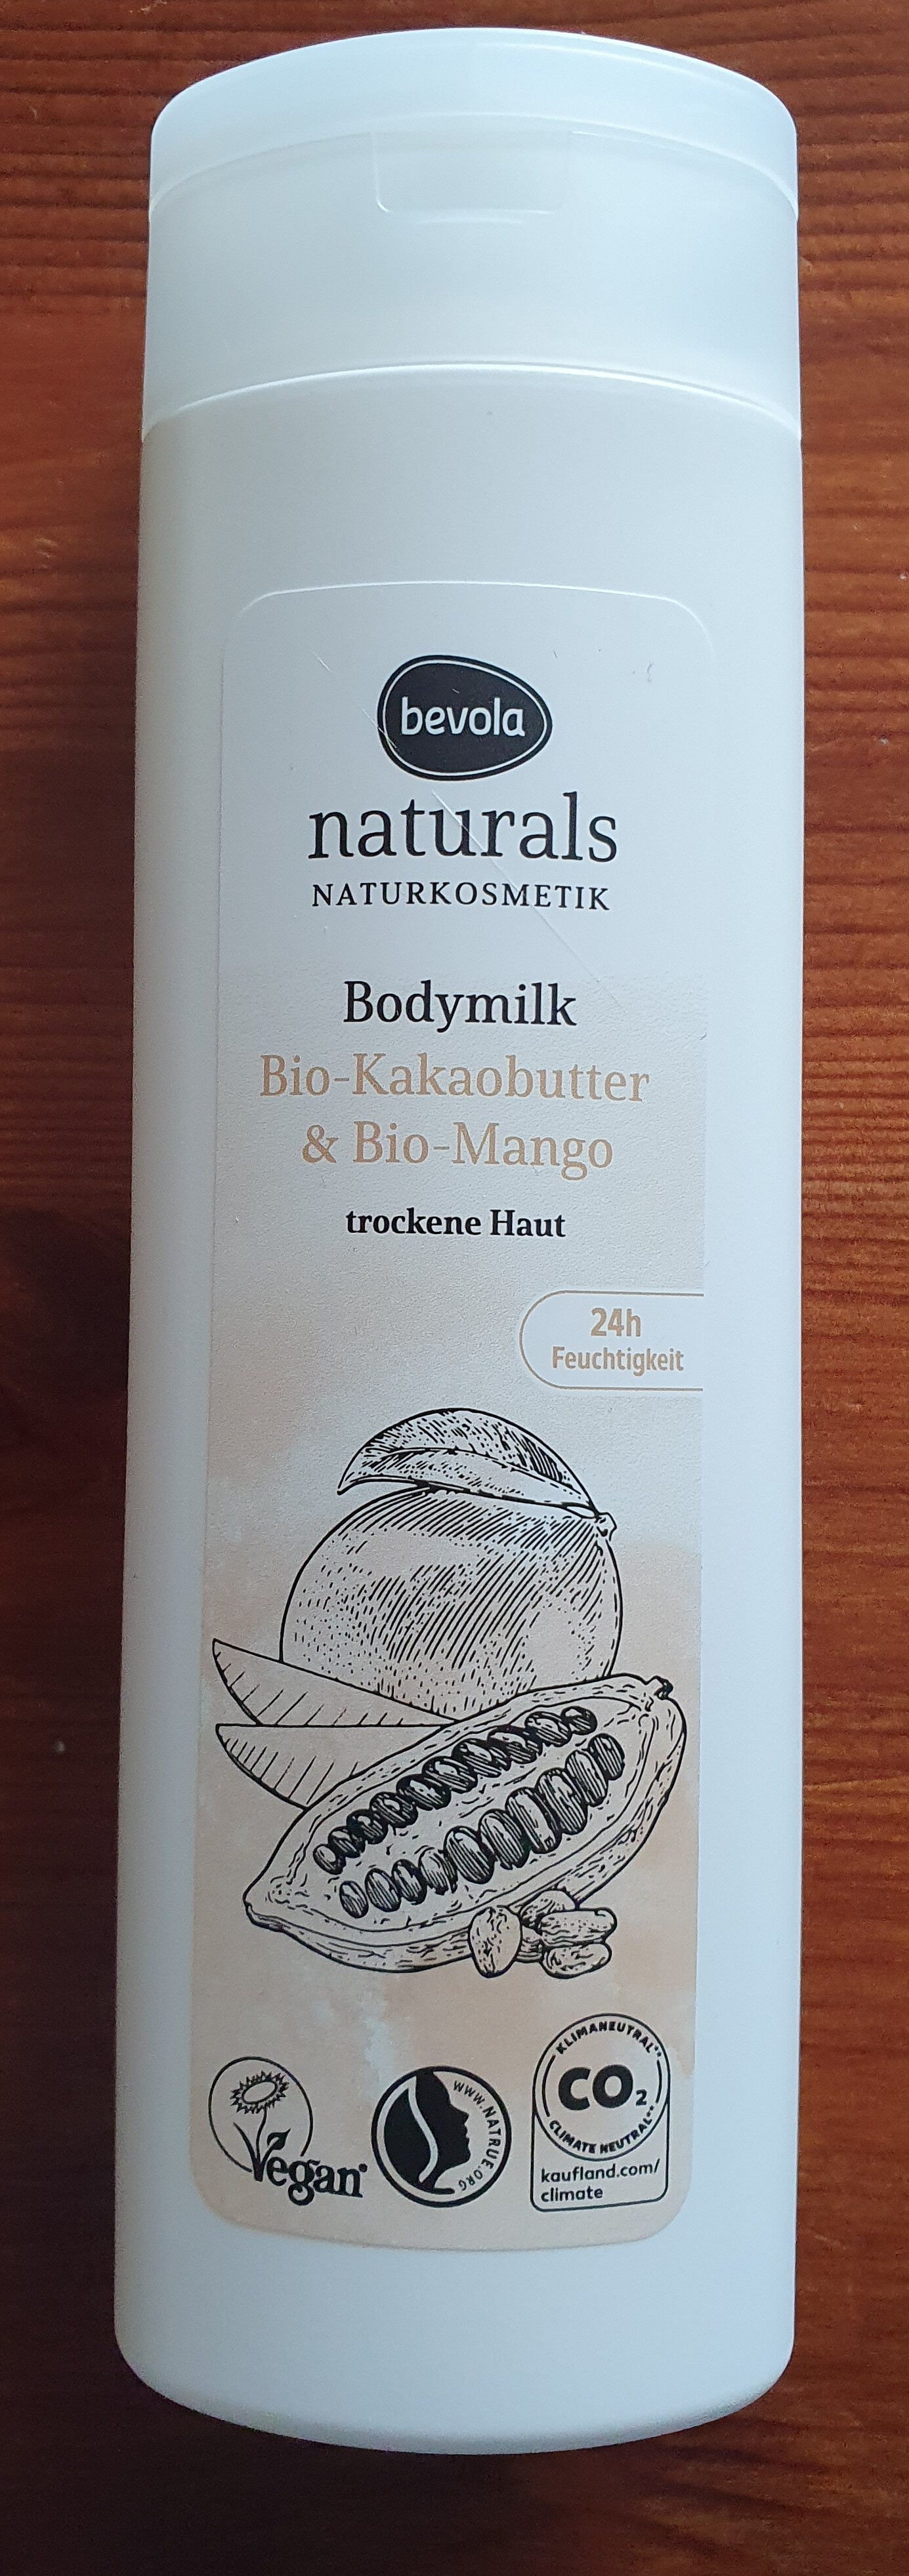 naturals Bodymilk - Product - de